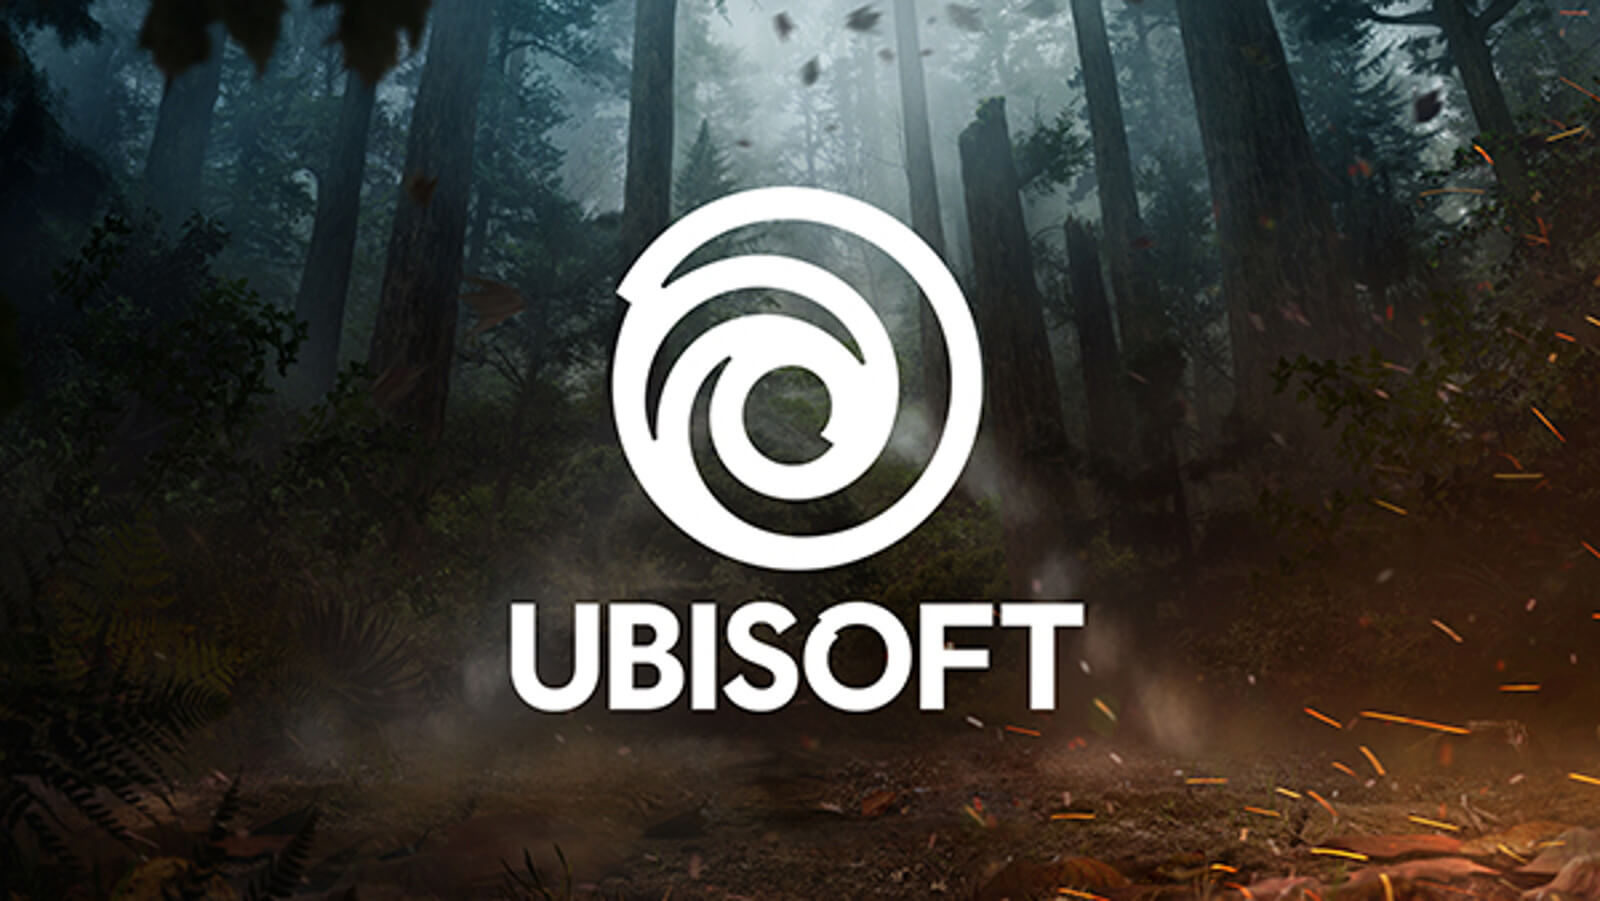 Novo logo da Ubisoft